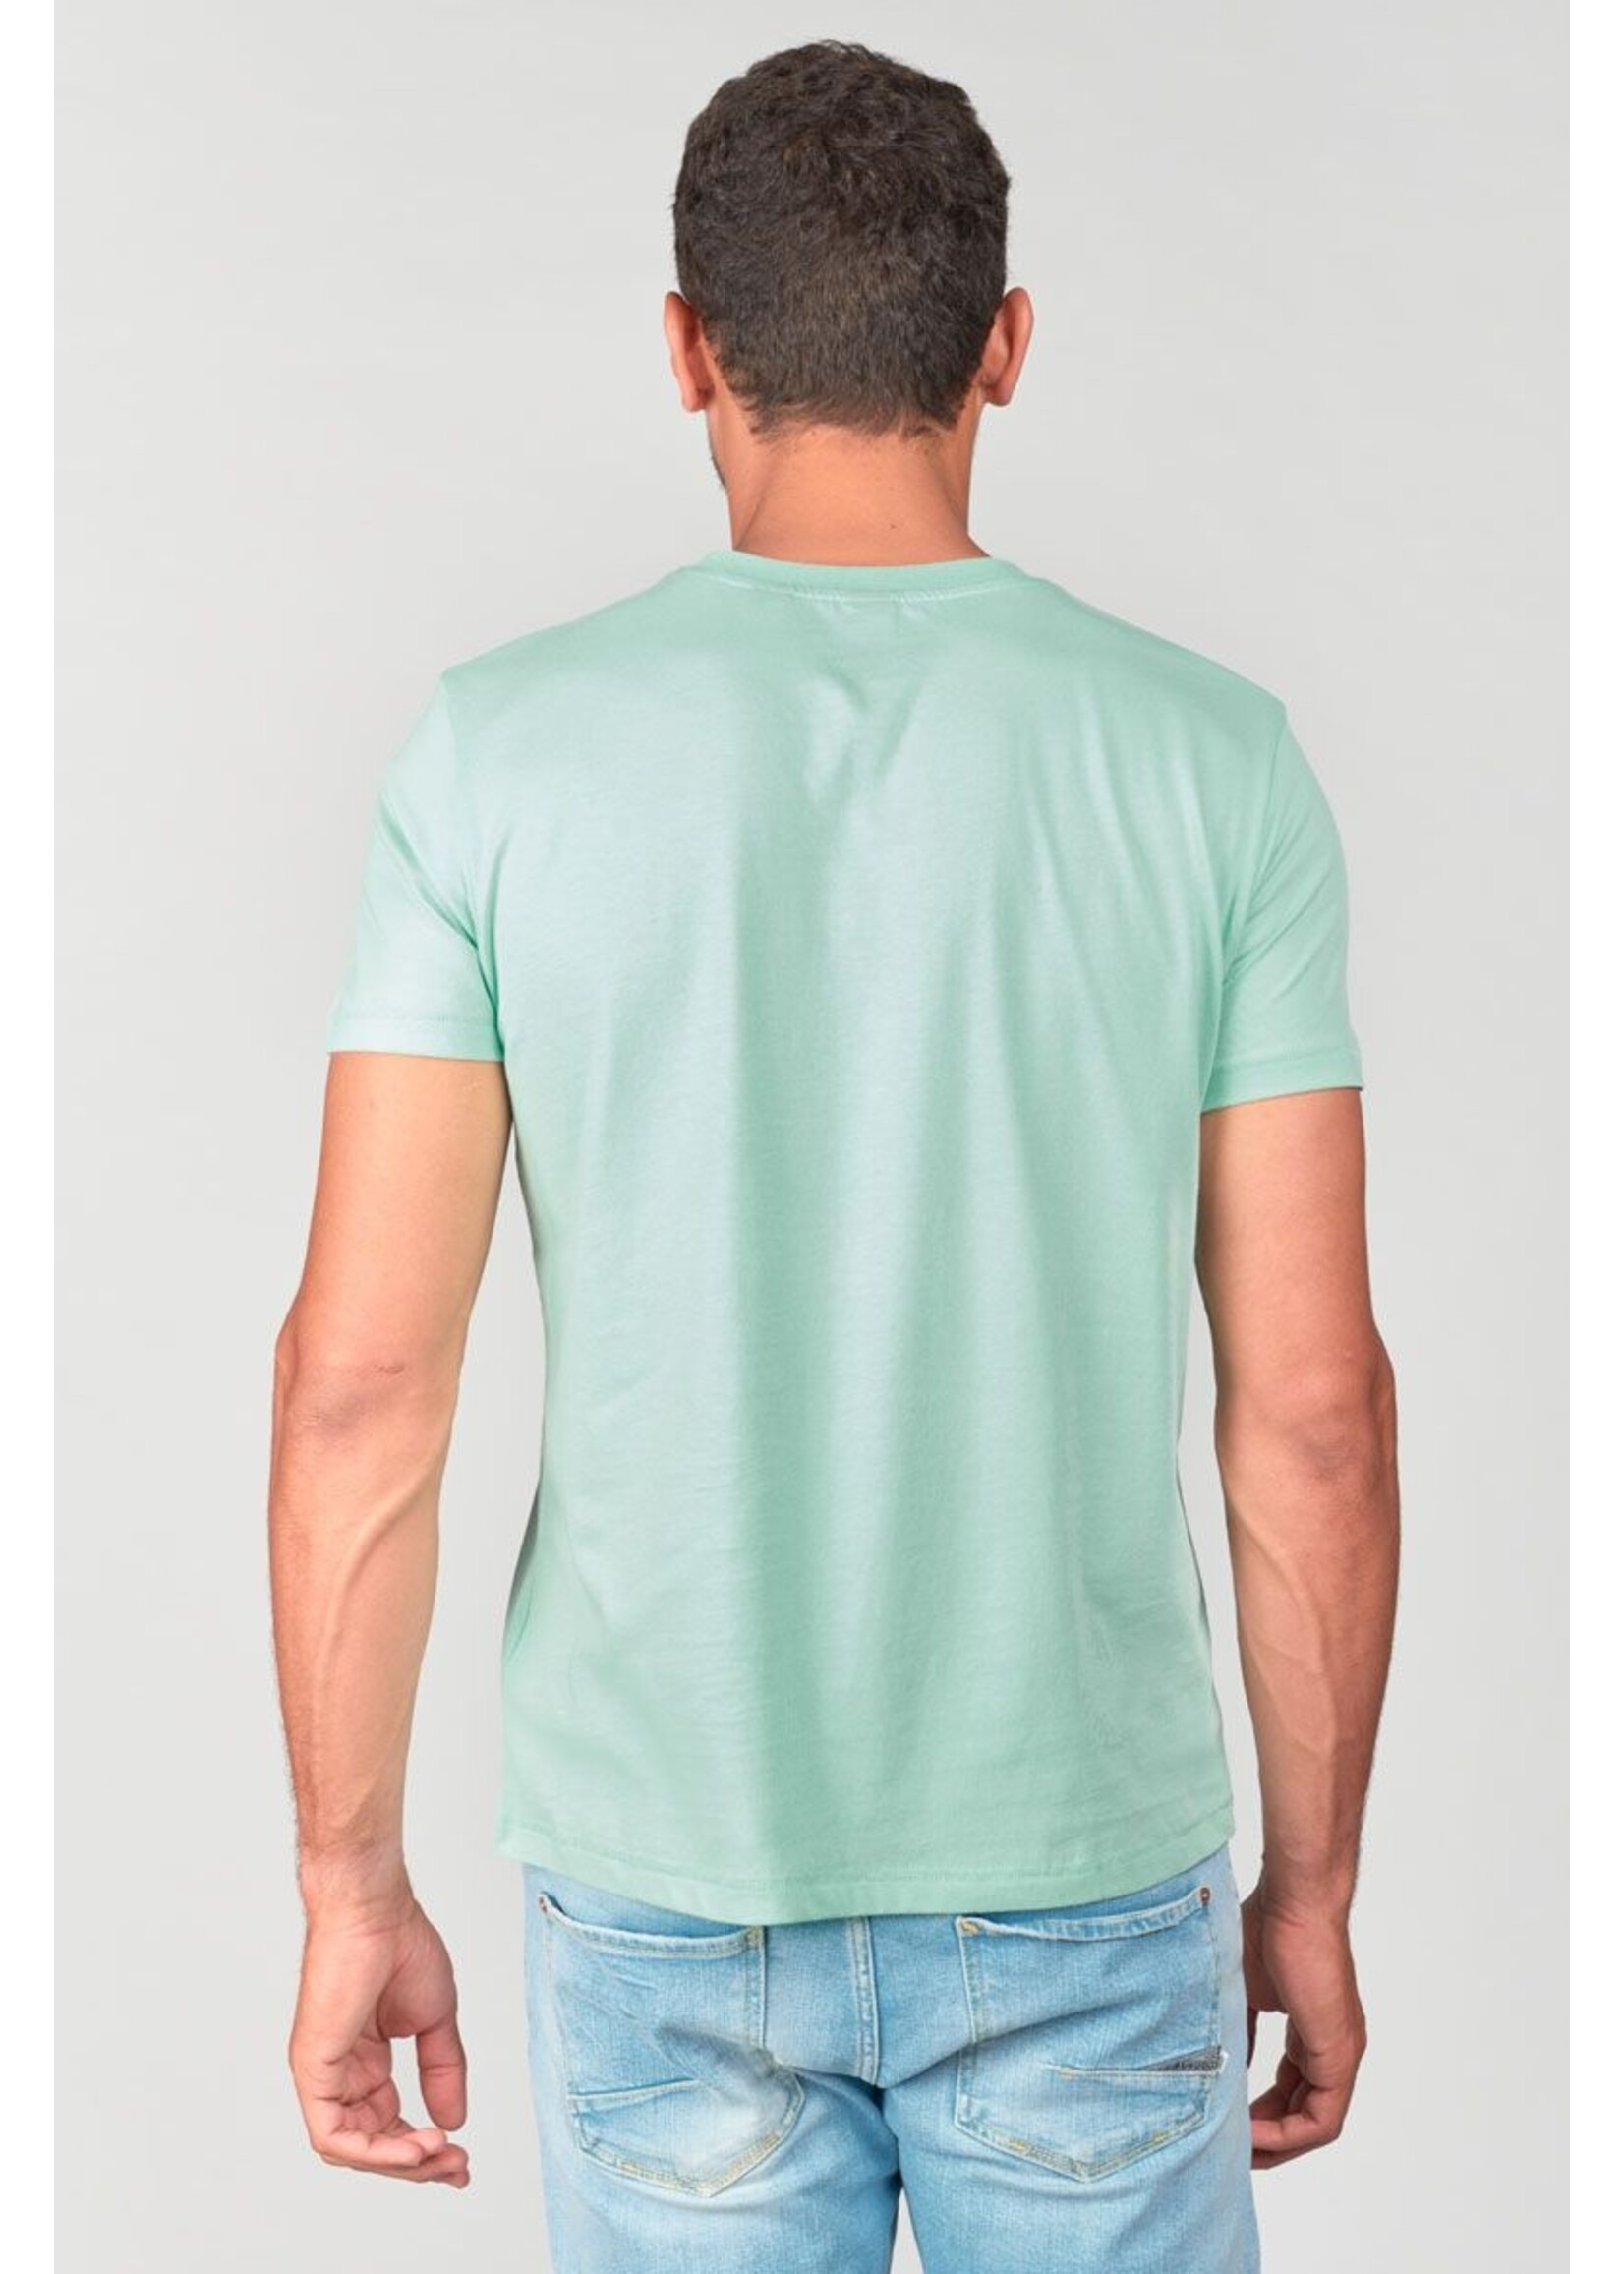 Le Temps Des Cerises Le Temps des Cerises - Brown T-shirt - Turquoise